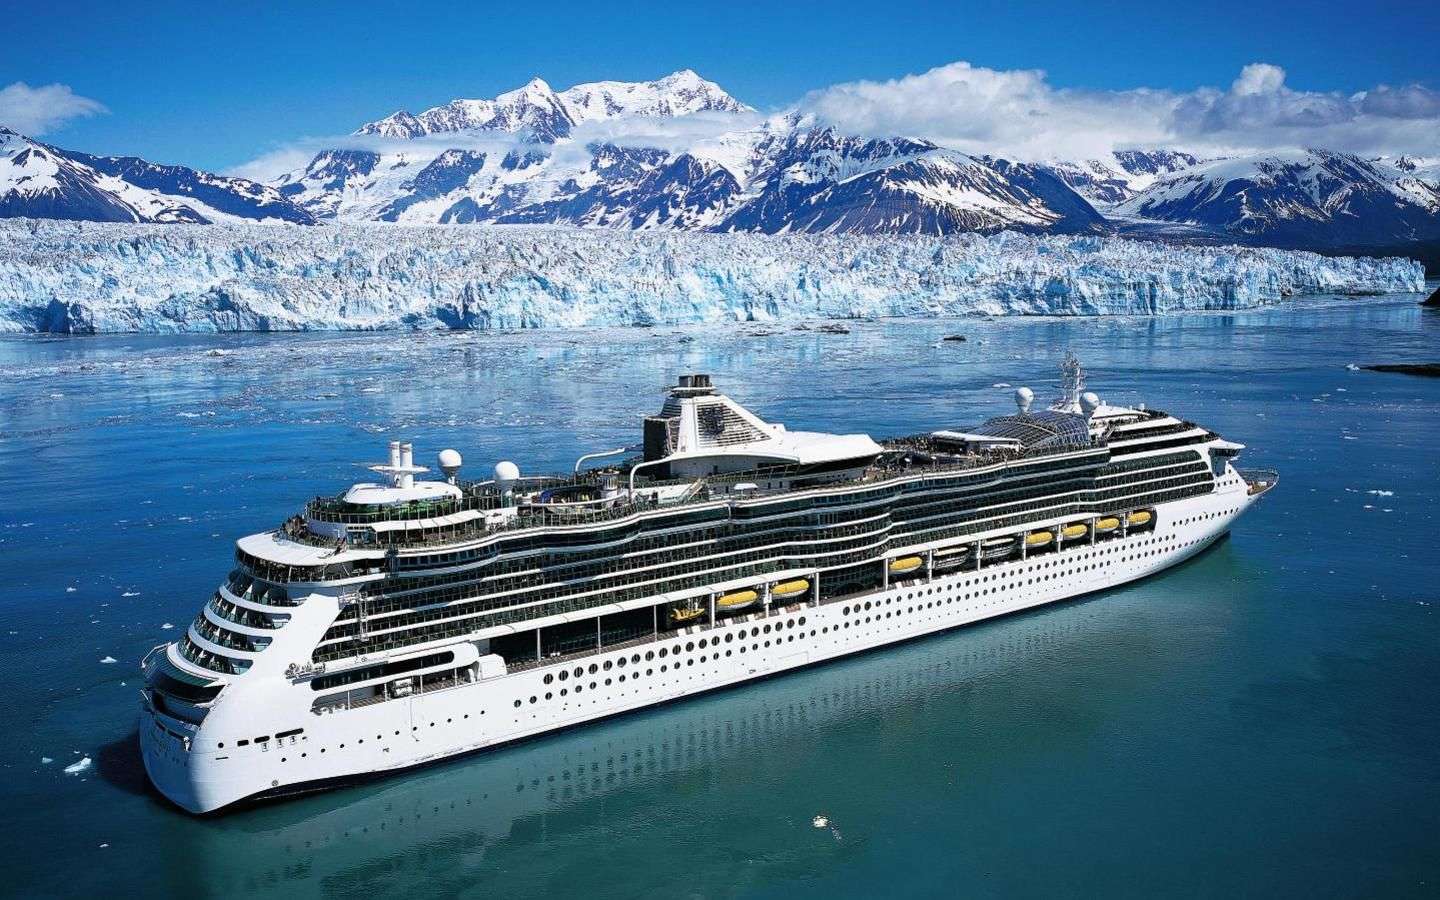 I want to take this cruise through Alaska!!